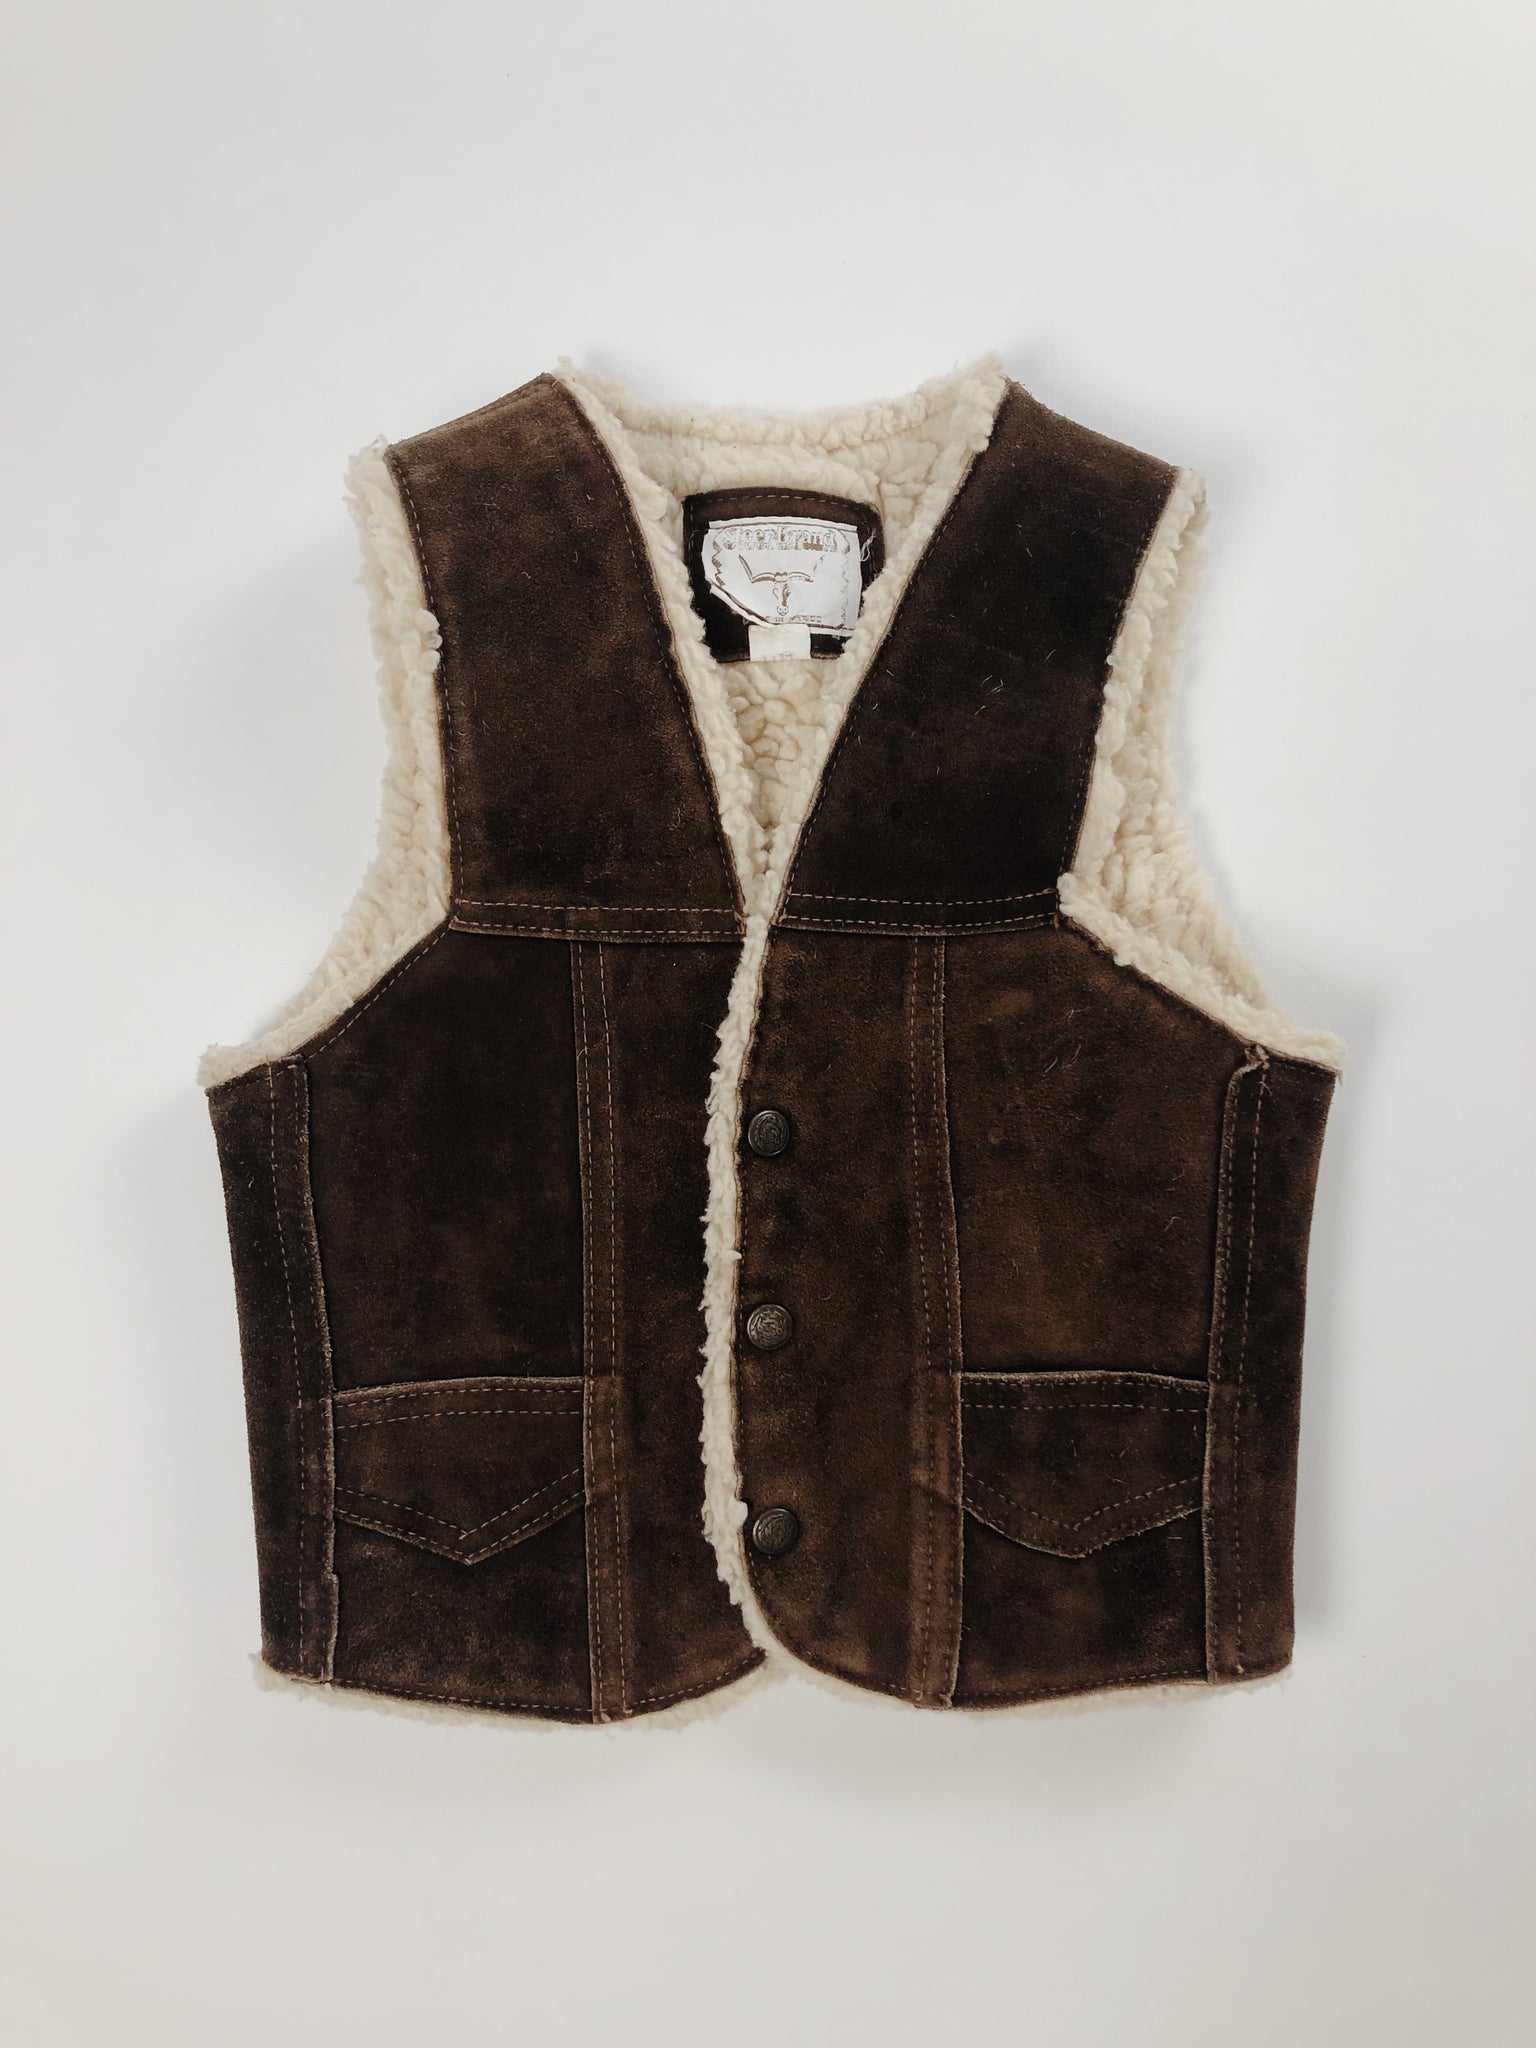 Leather Sherpa Vest - Size 5